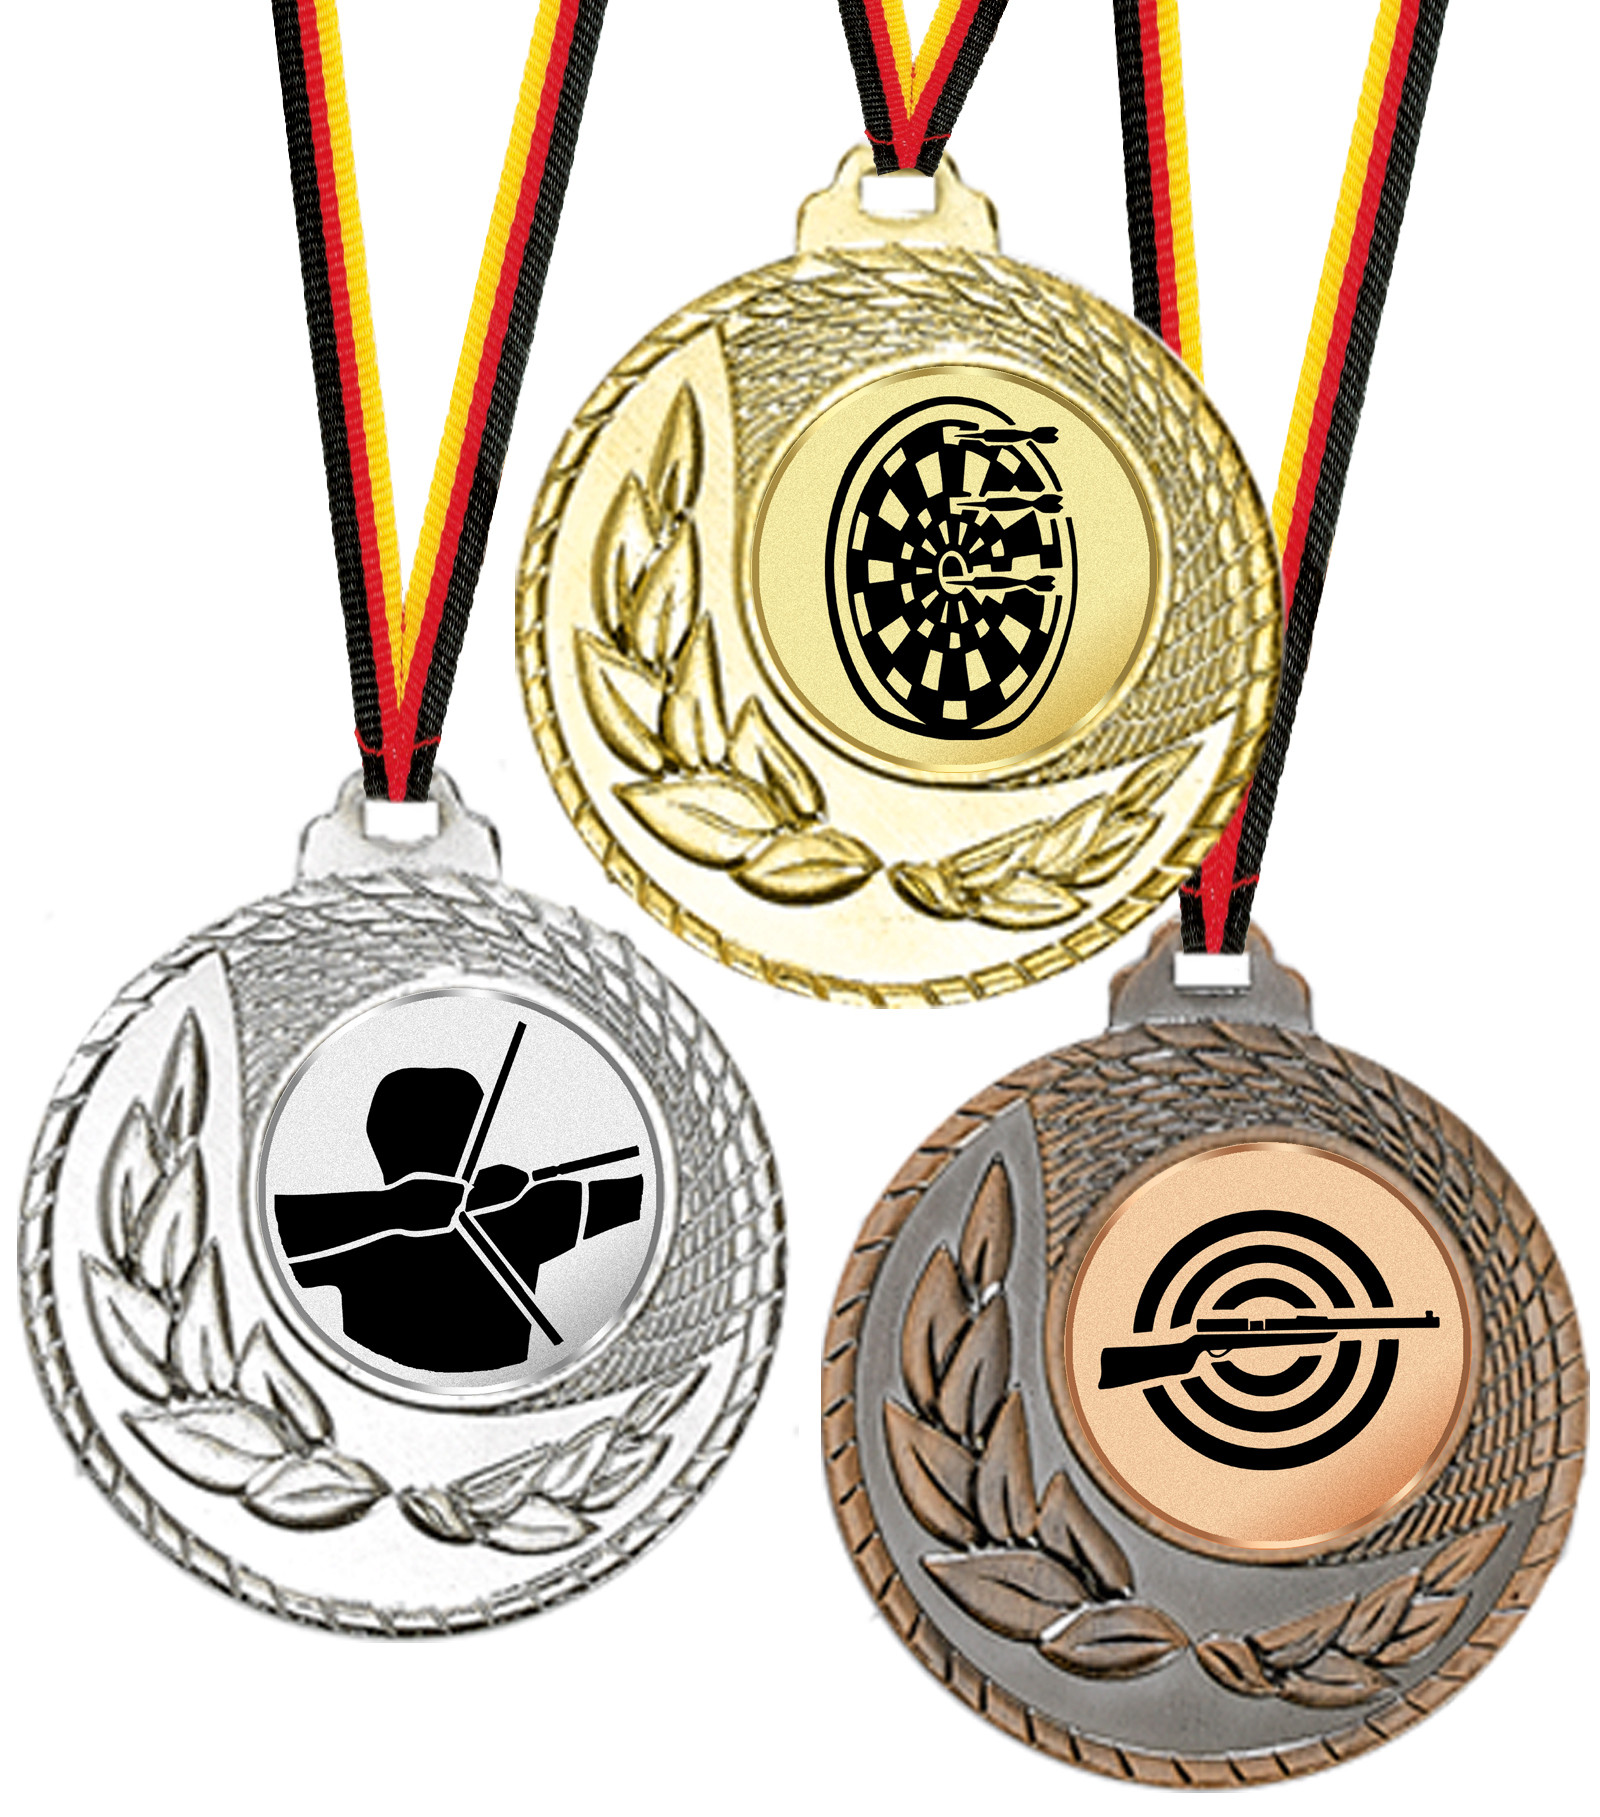 10 Angler-Medaillen mit farbigen Emblemen und Deutschland-Bändern 